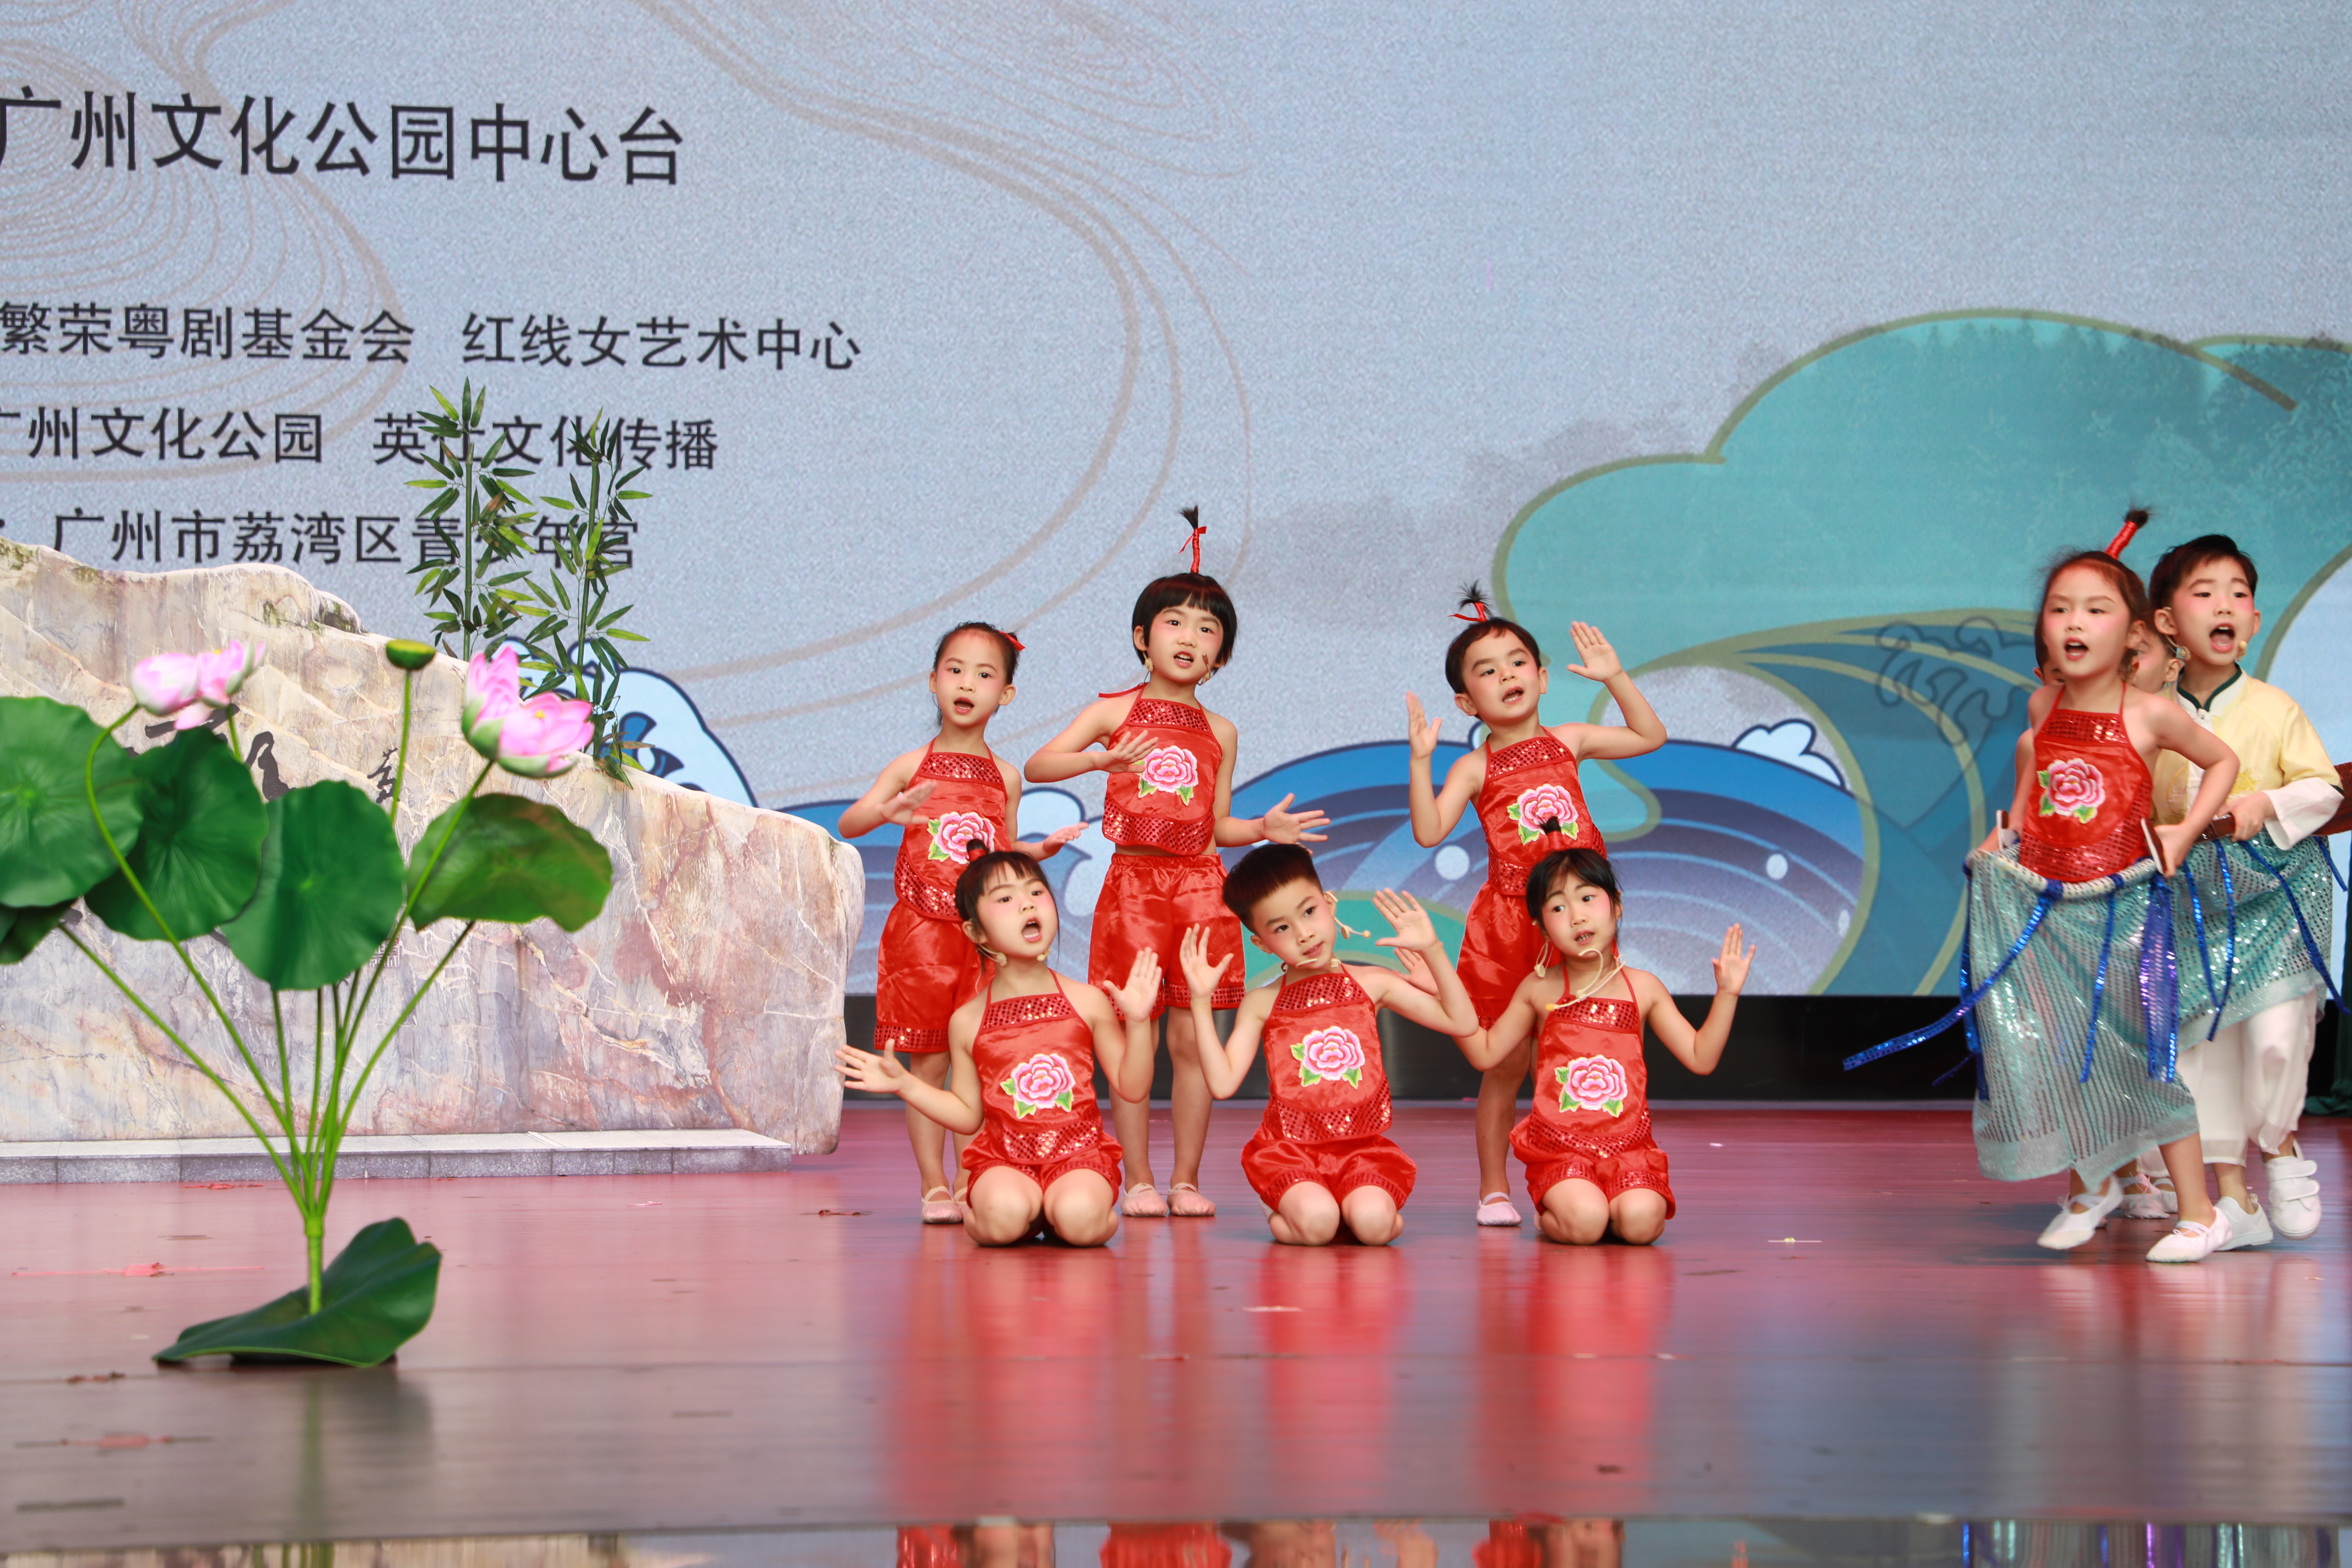 广州市荔湾区桃源幼儿园小演员们演绎《畅游荔枝湾》